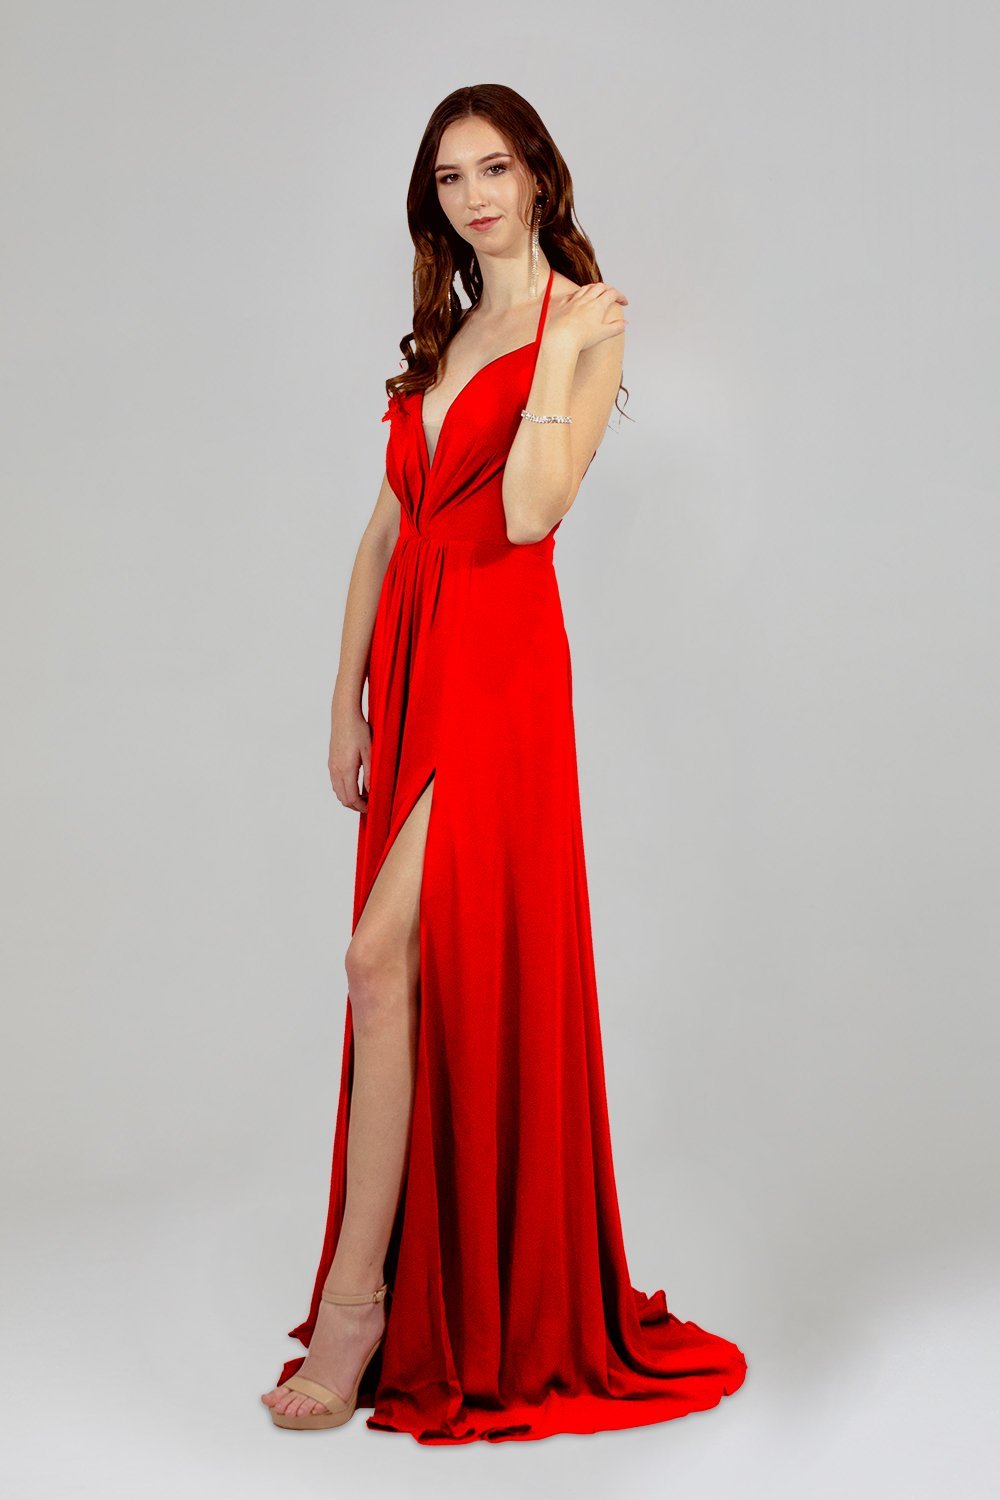 red chiffon bridesmaid dresses perth australia online envious bridal & formal